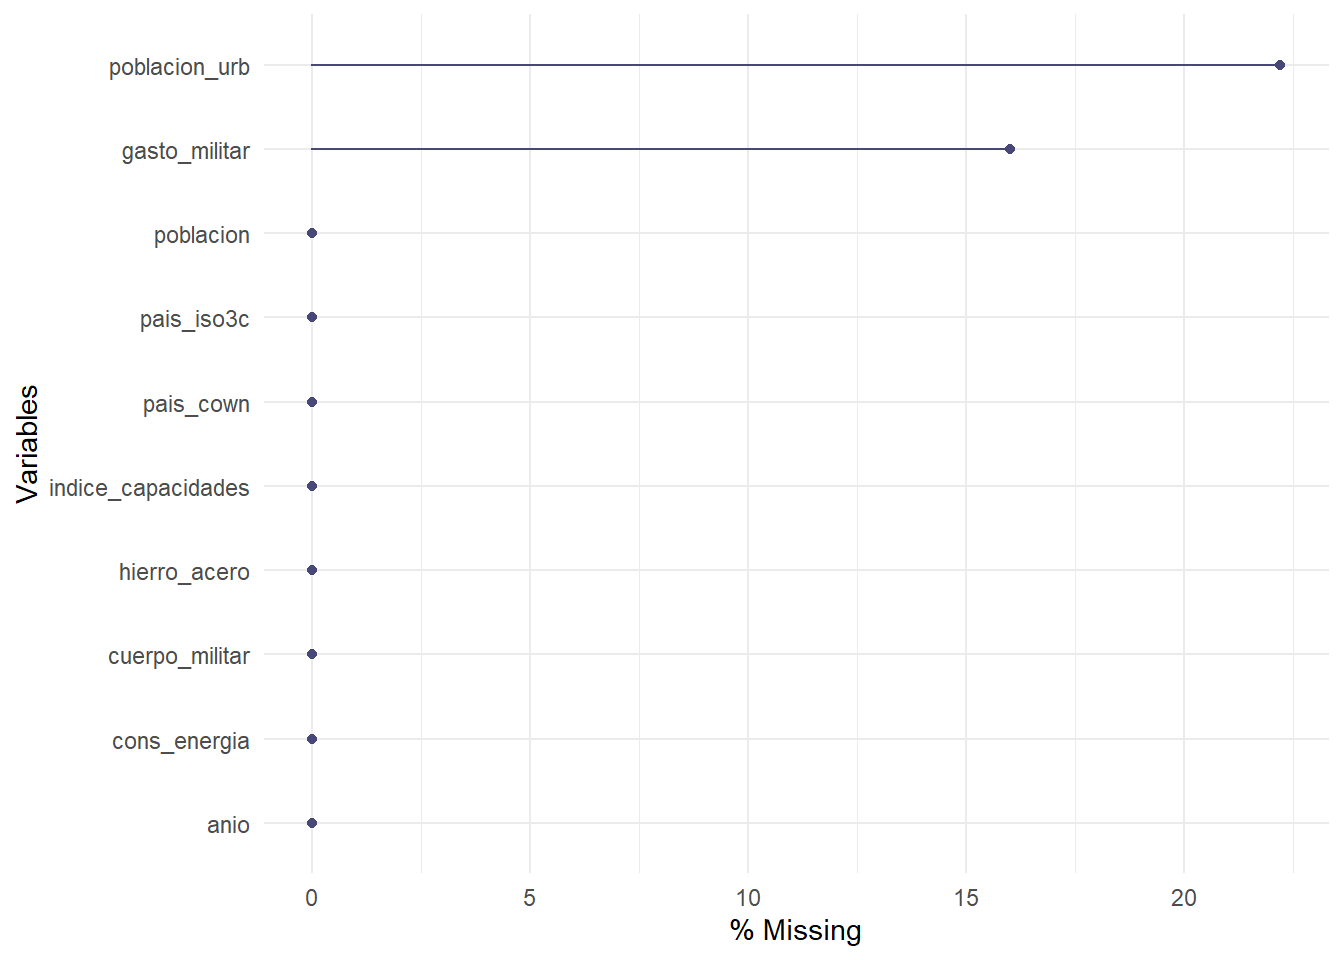  Valores perdidos por variable en nuestra base de datos, expresados como porcentaje de las observaciones